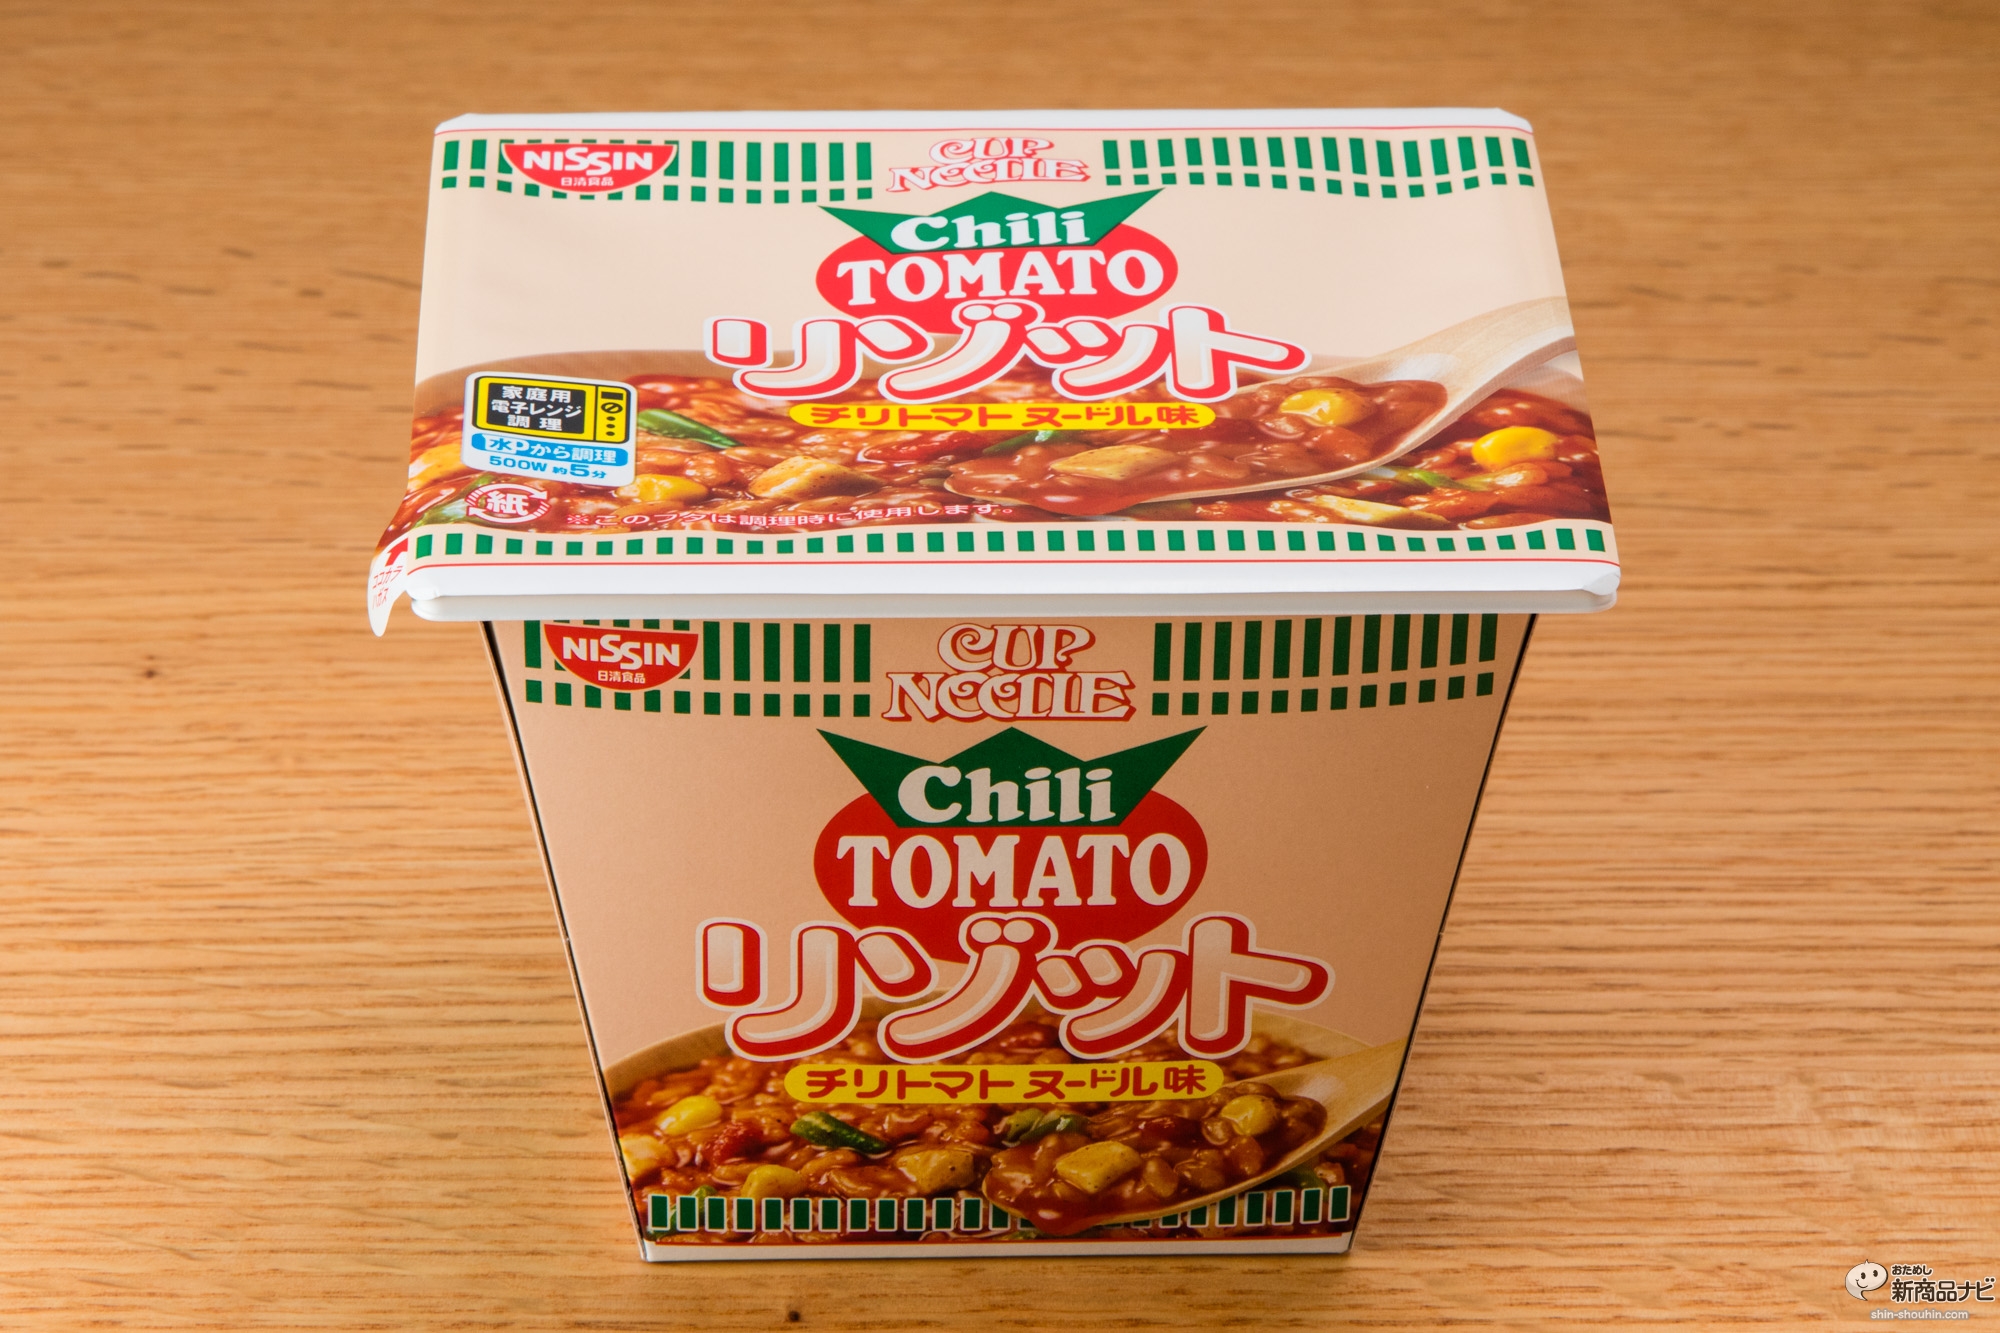 おためし新商品ナビ Blog Archive 日清カップヌードルリゾット チリトマト は生米 から作ったリゾットを思わせる即席イタリアンの完成形だ